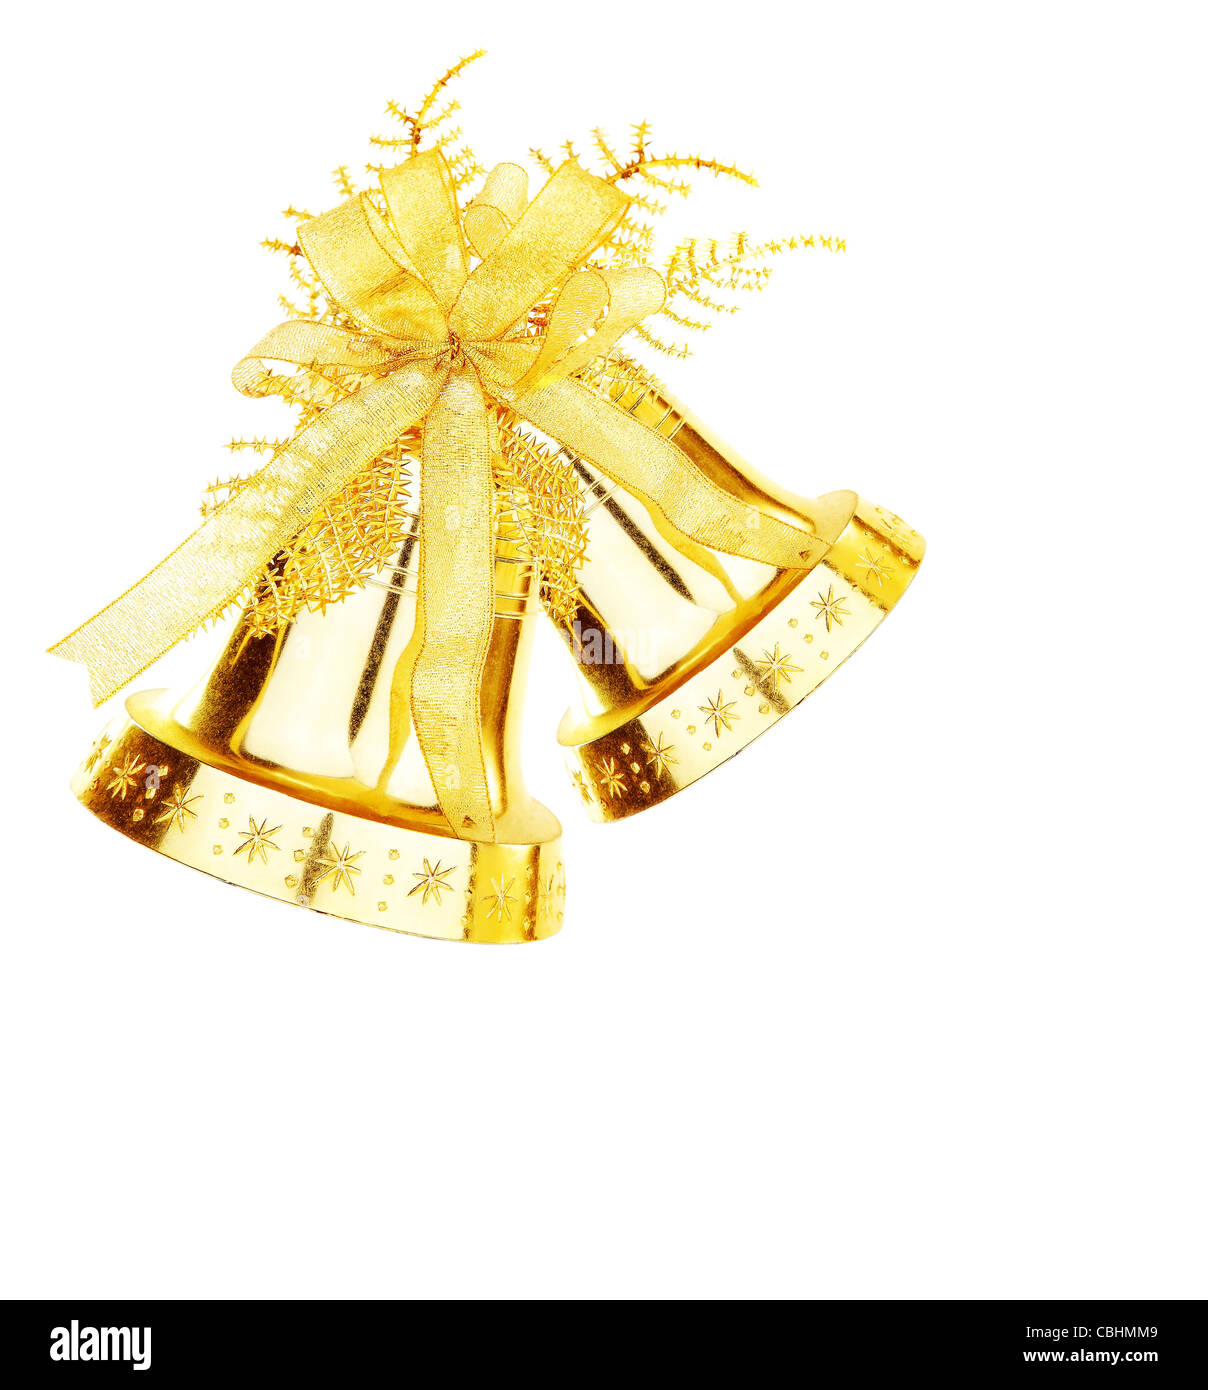 Golden jingle bell, ornement d'arbre de Noël et décorations de Noël isolé sur fond blanc Banque D'Images